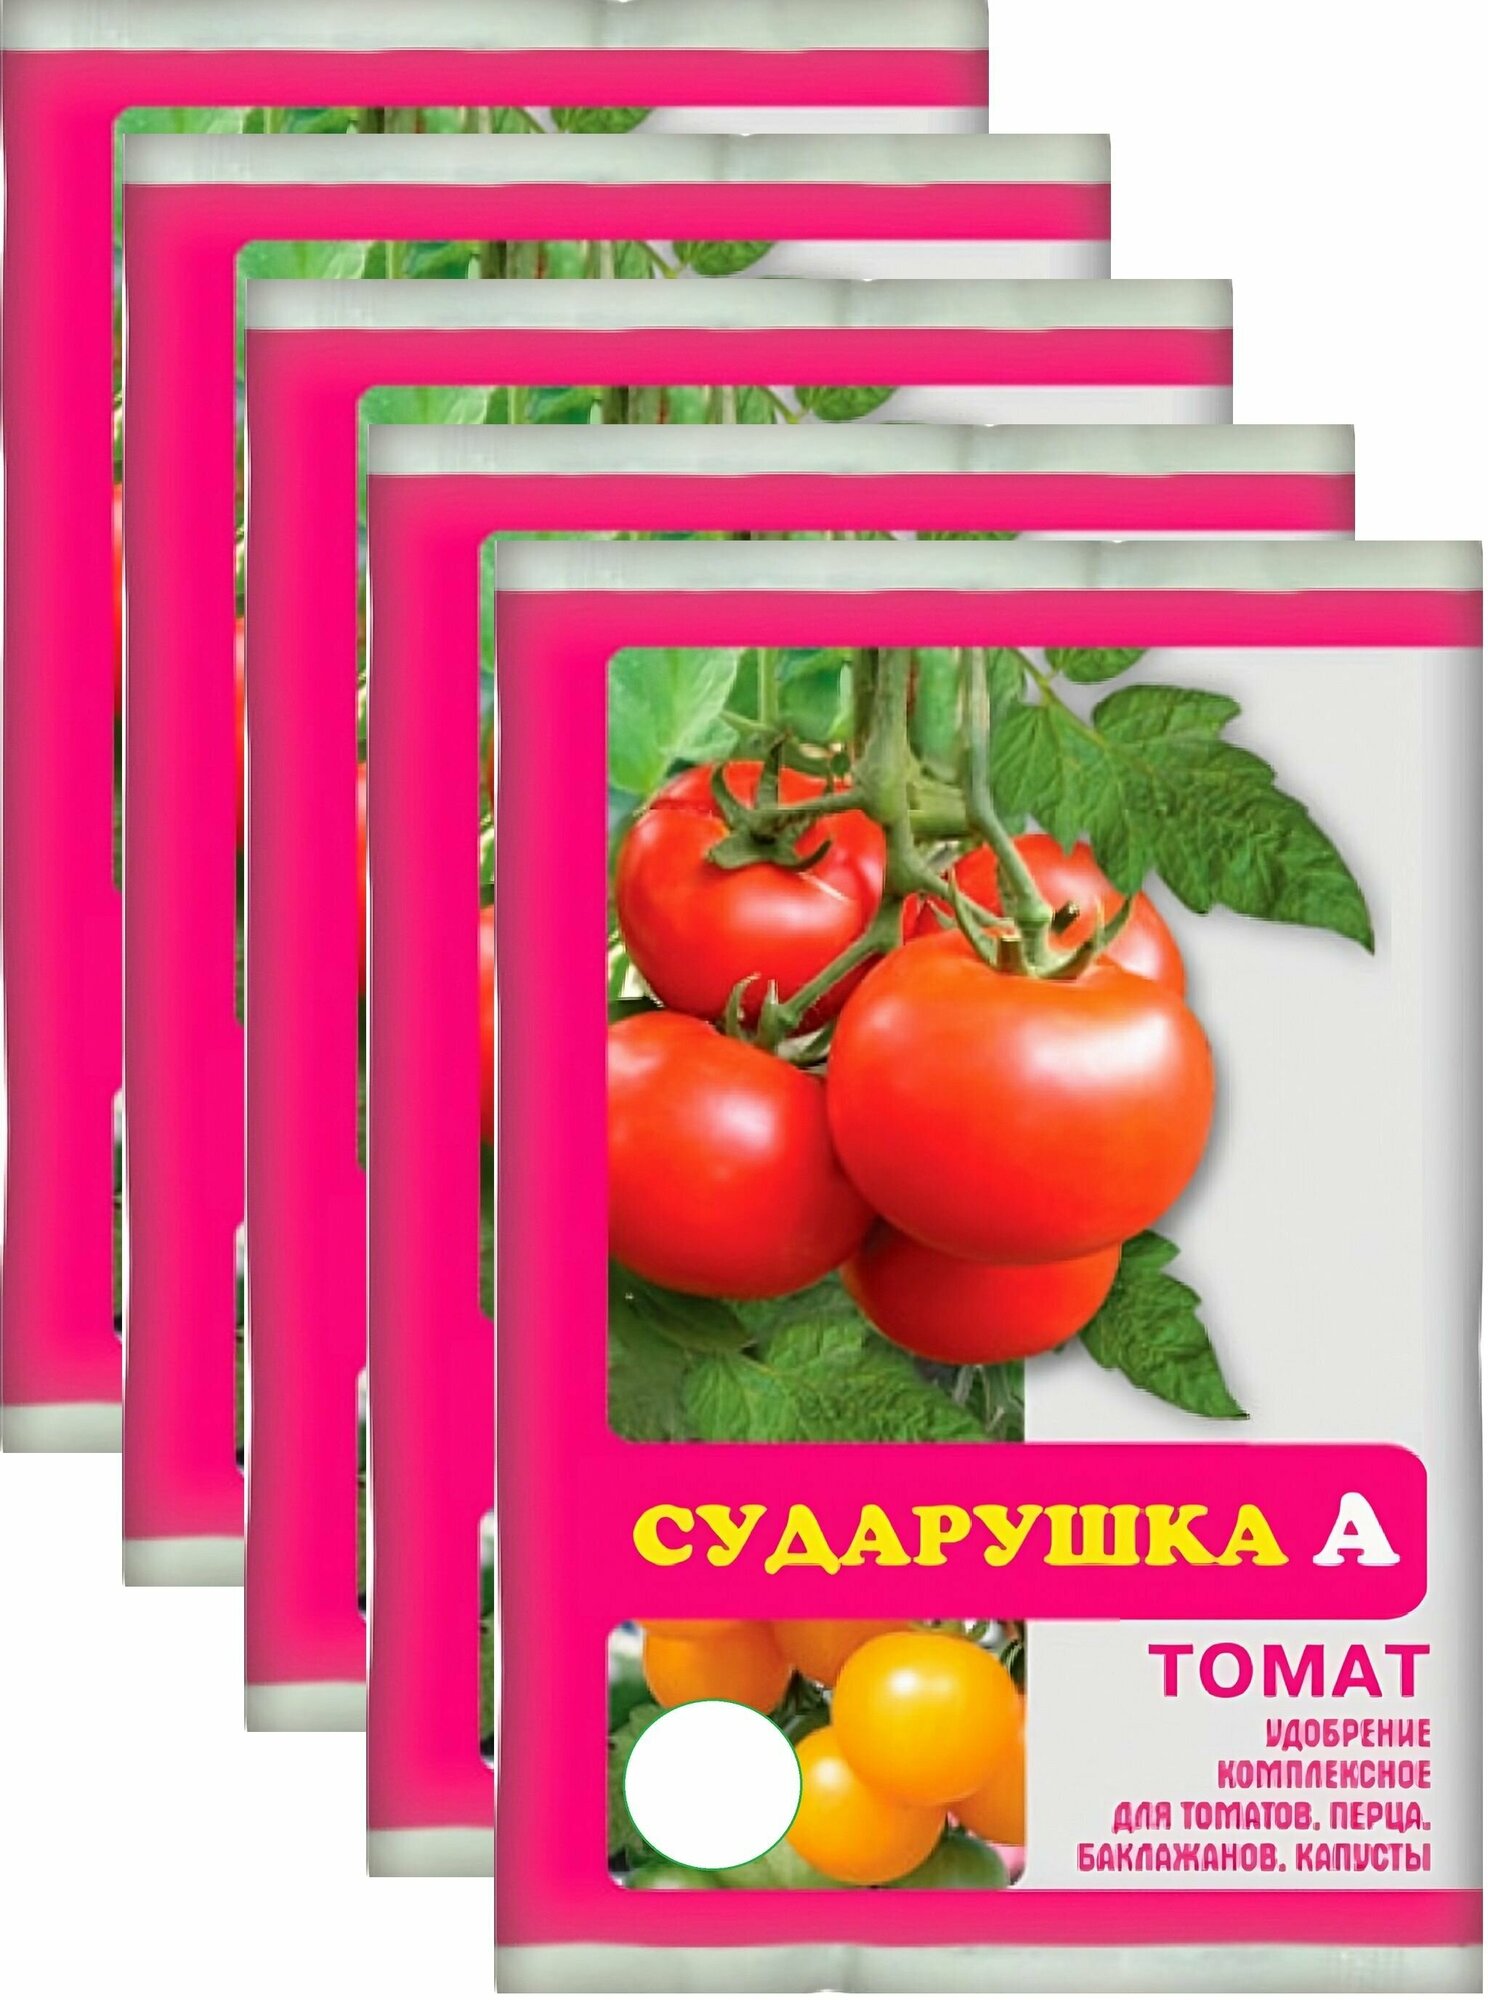 Удобрение для томатов "Сударушка", 5х60 г, подходит для перцев, баклажанов и других овощей. Стимулирует рост плодов, повышает их вкусовую ценность